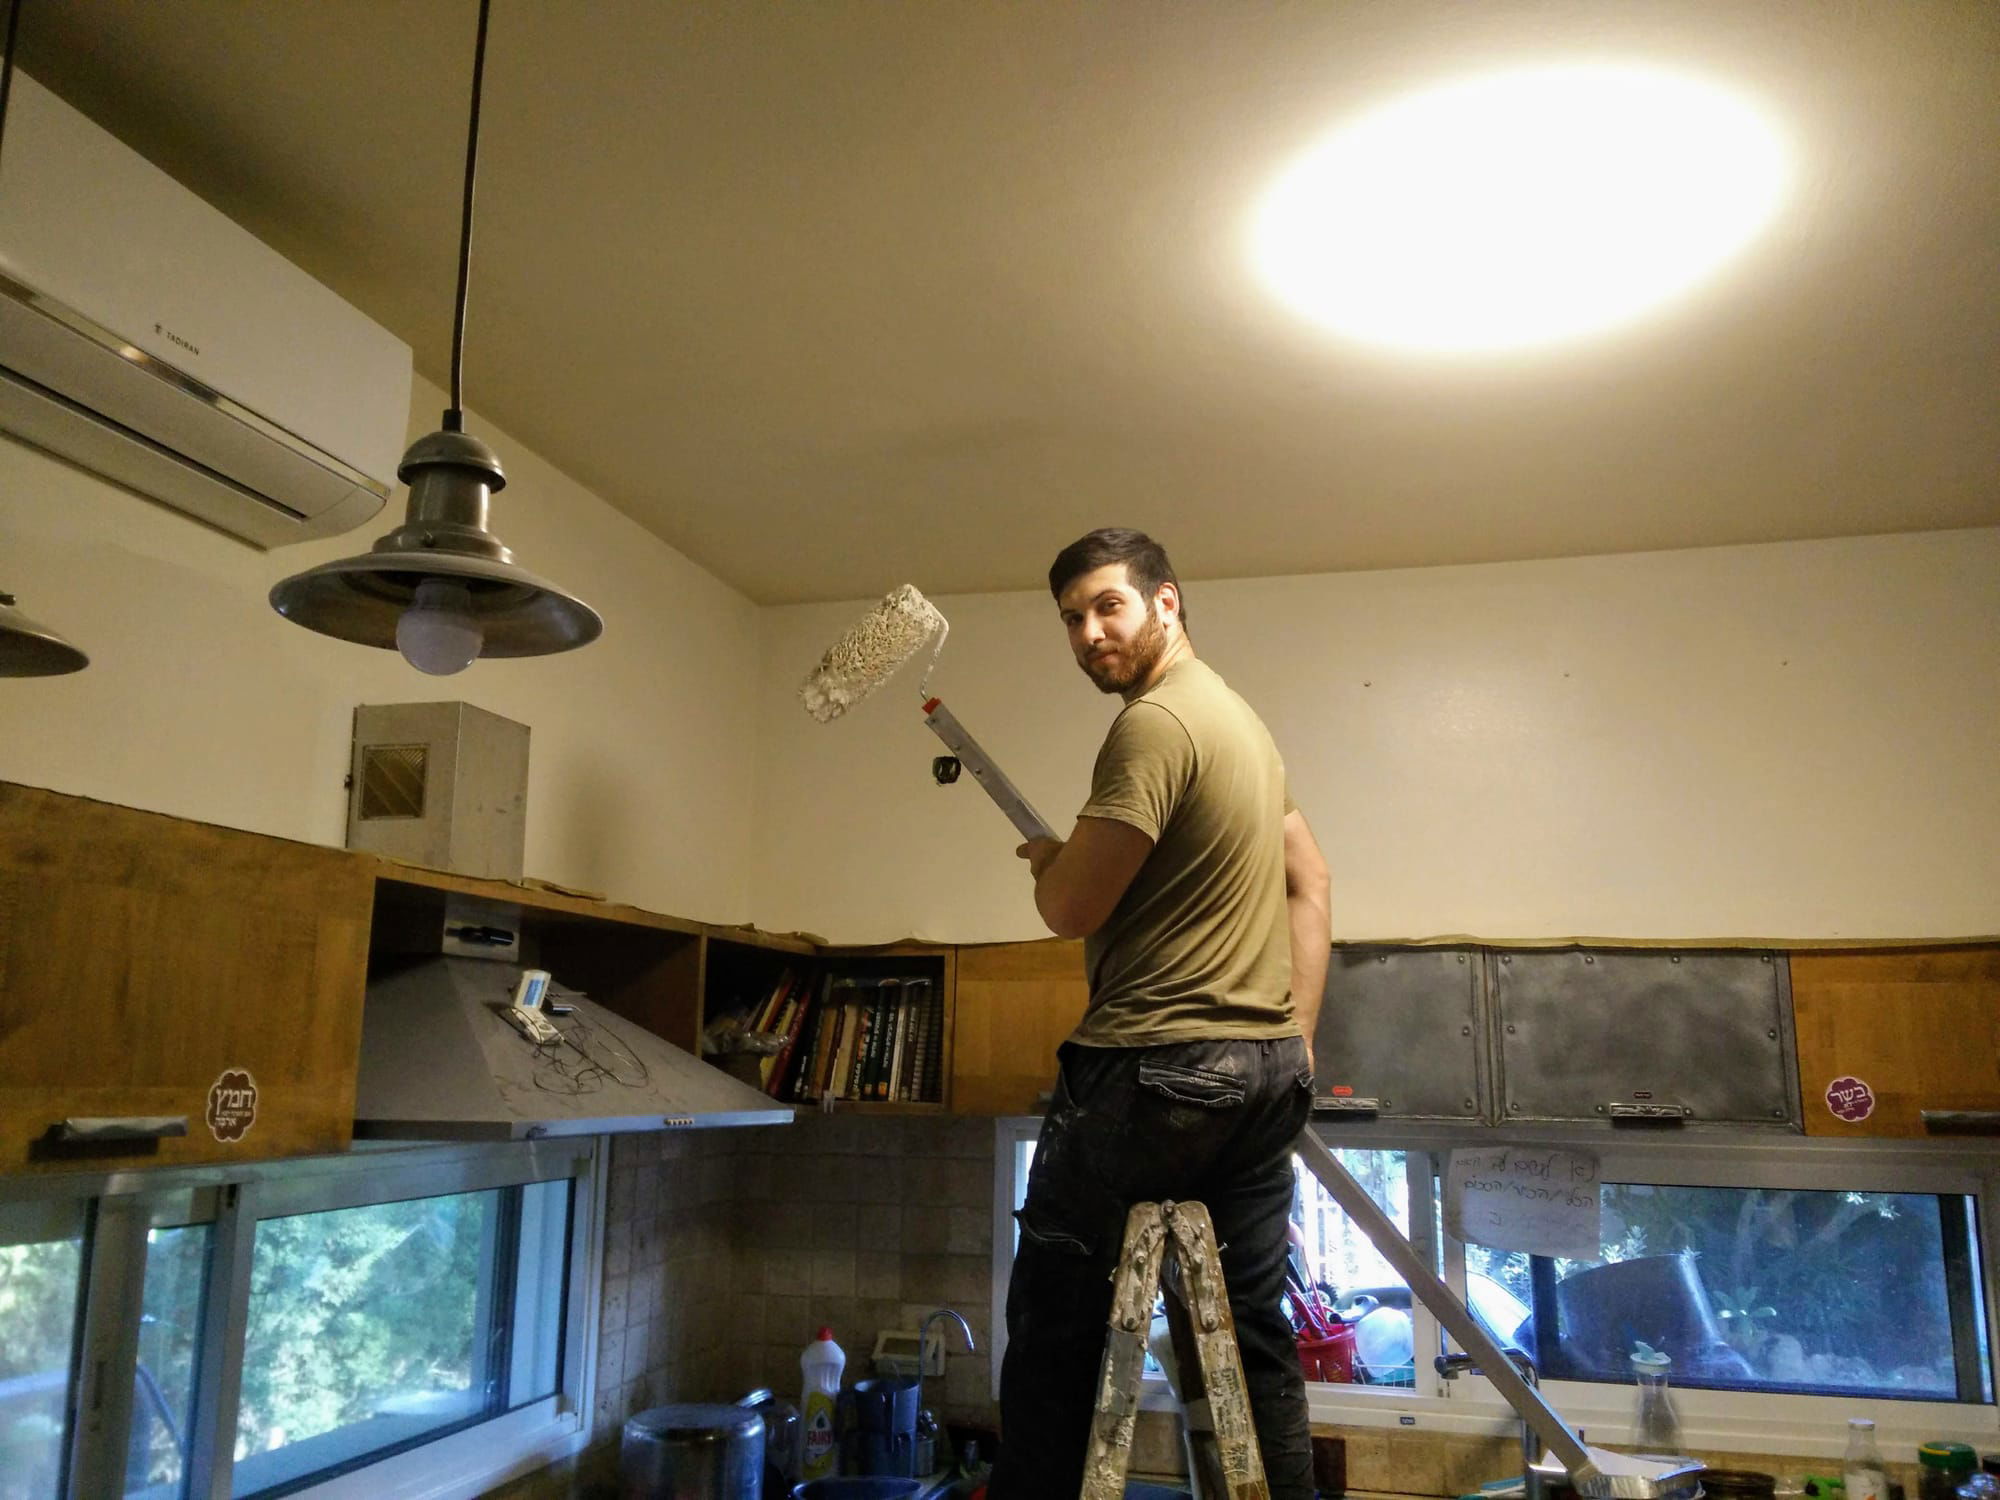 יאיר אדר על הסולם צובע את הקירות במטבח